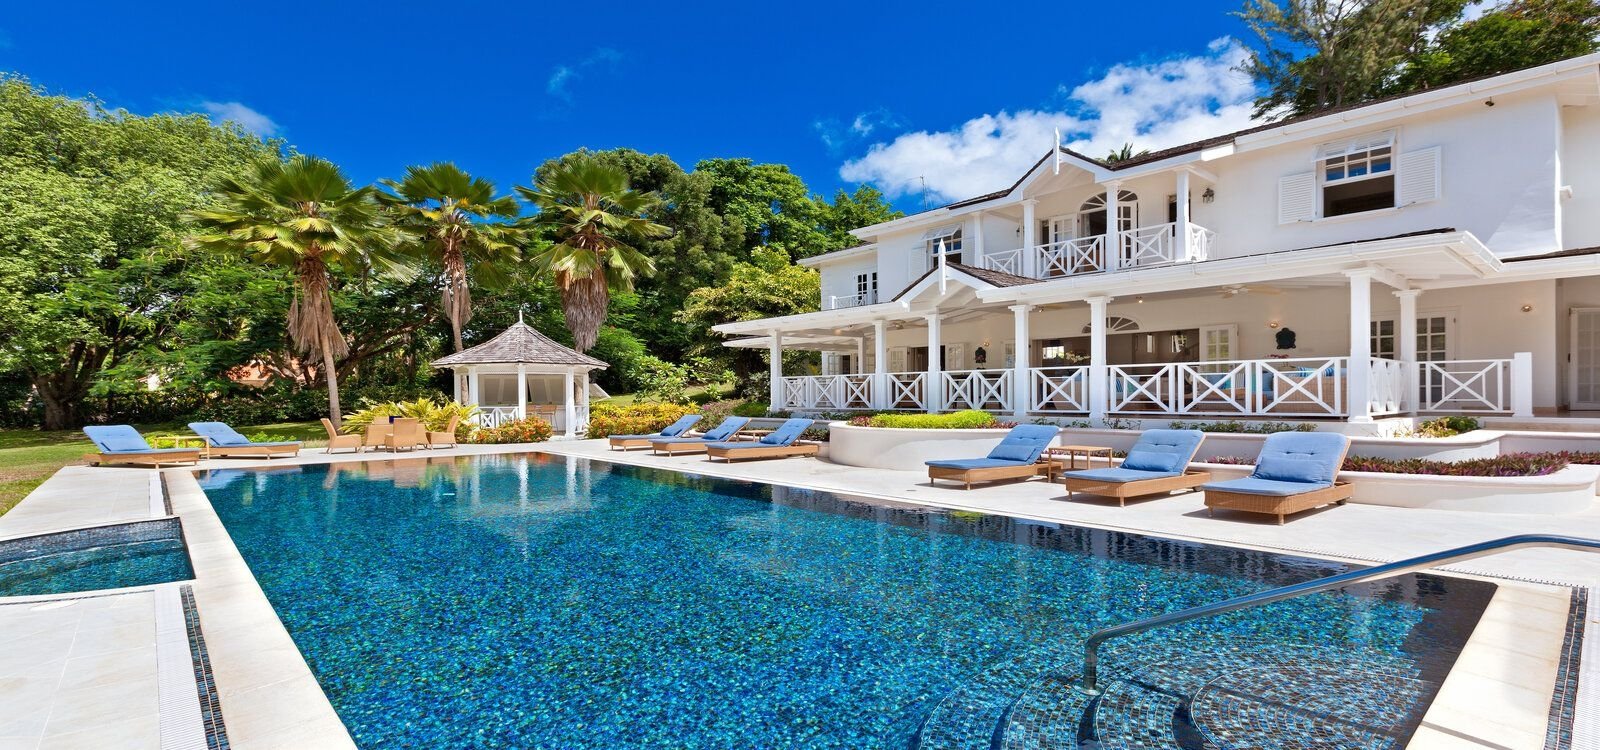 Moon Dance pool villa in Barbados